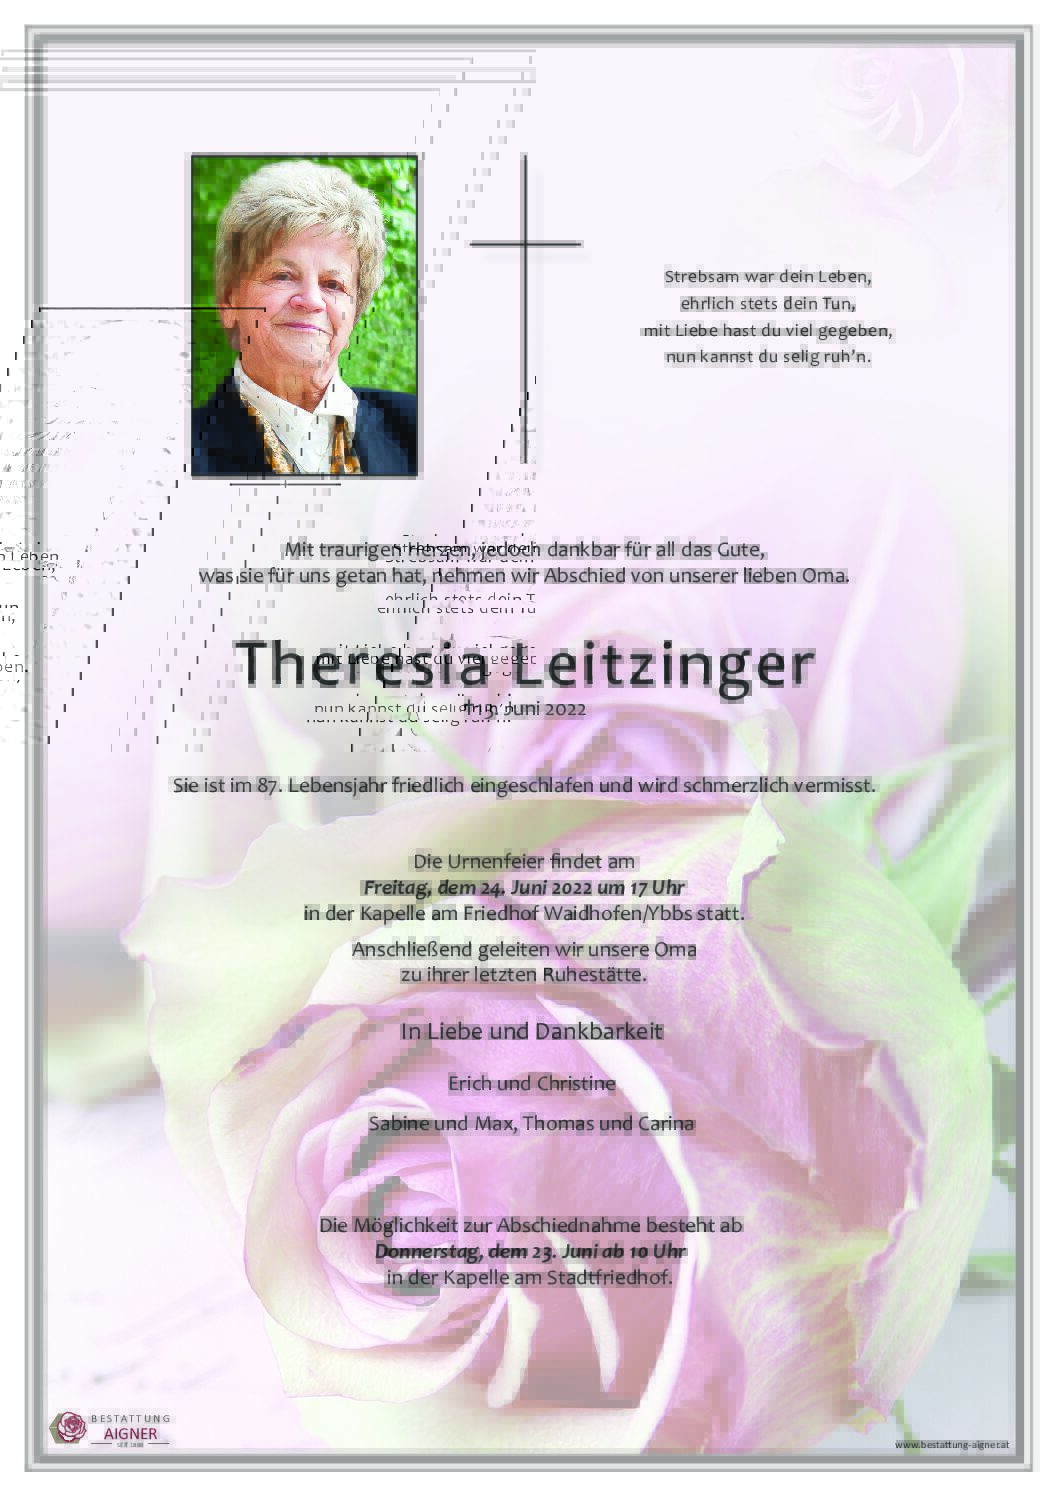 Theresia Leitzinger